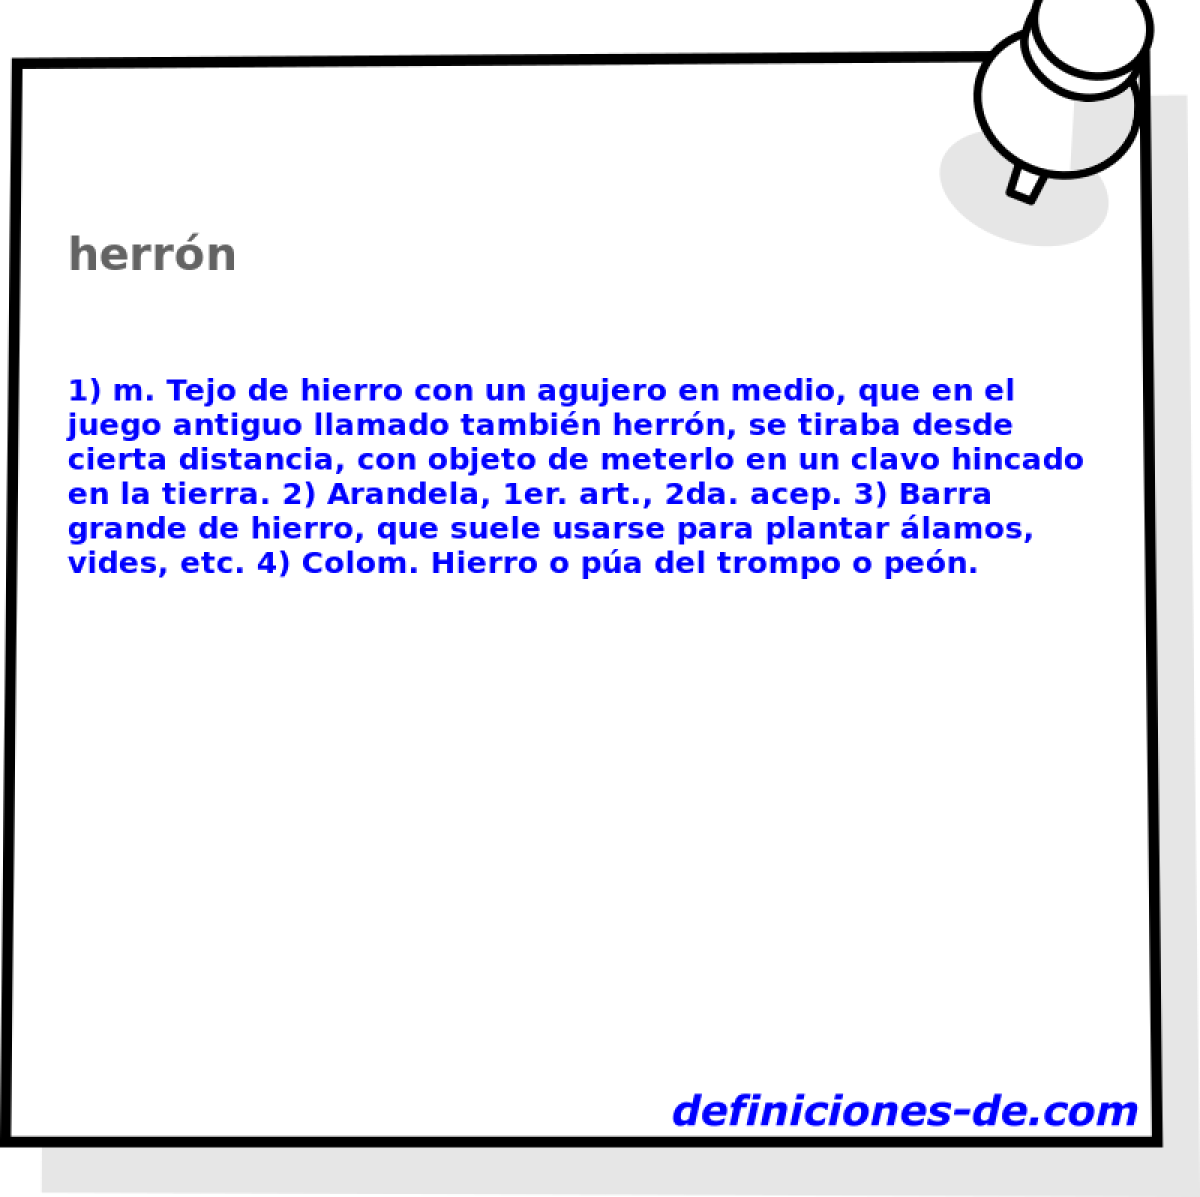 herrn 